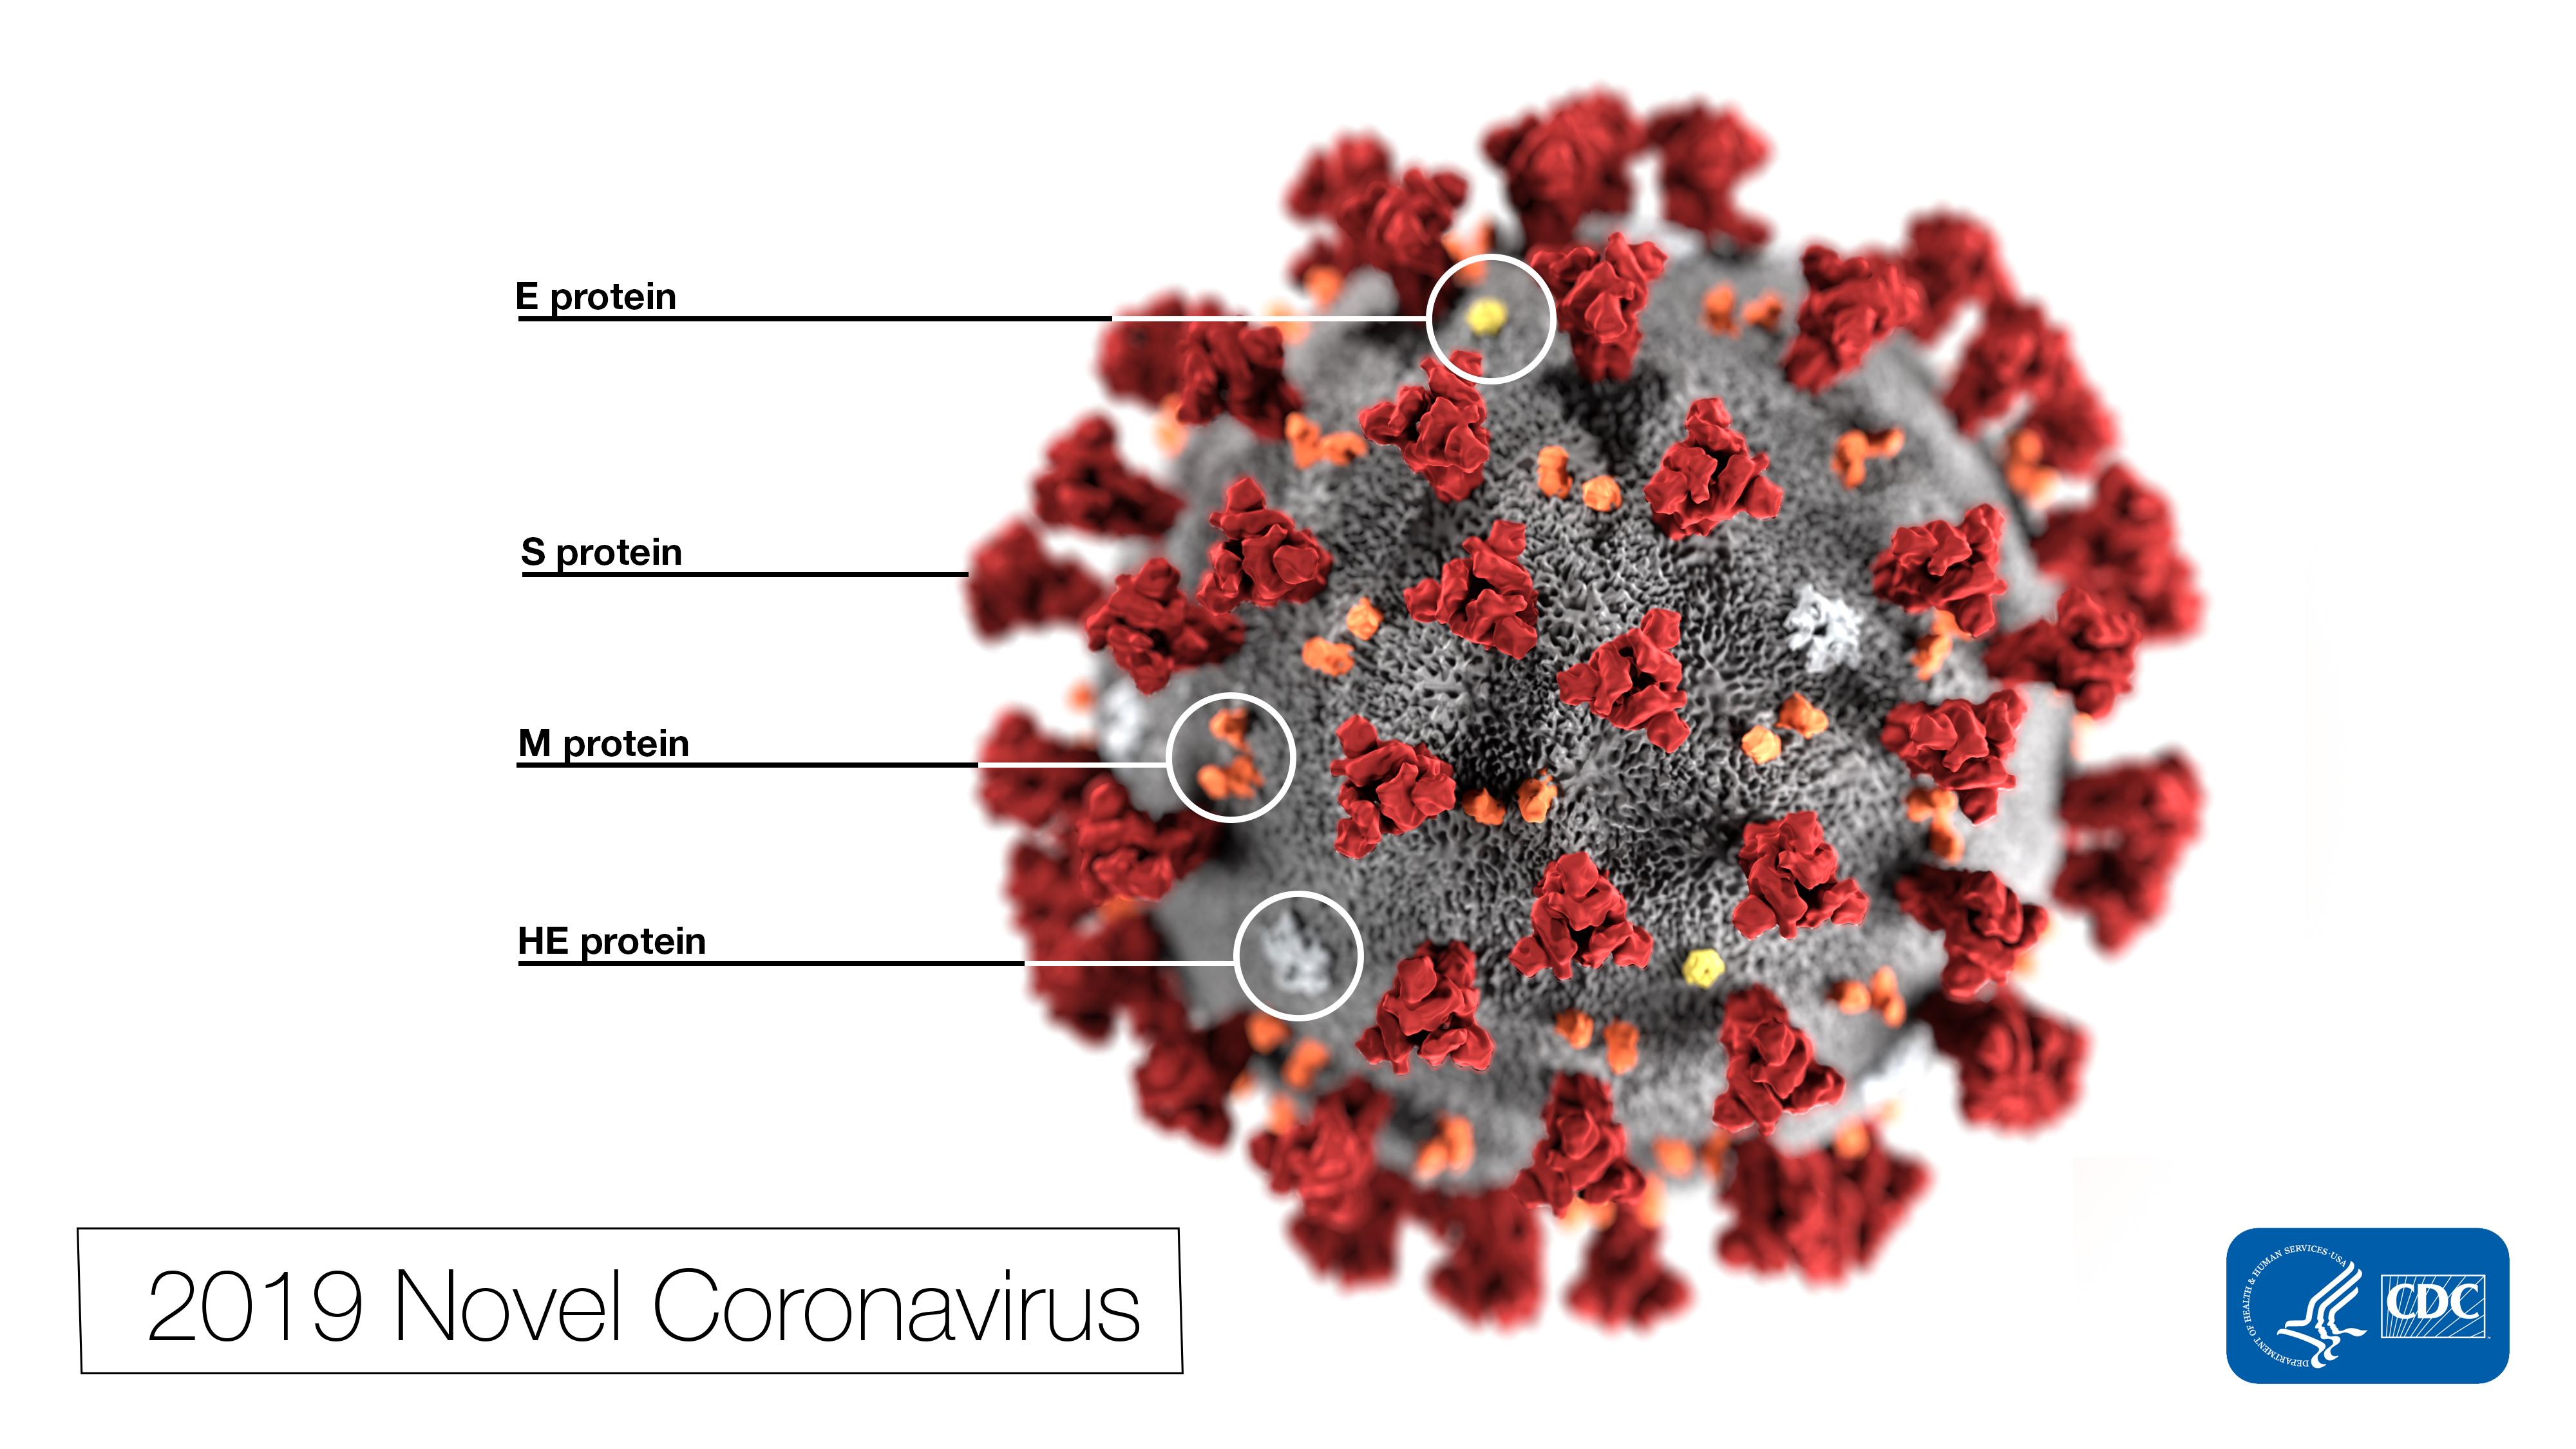 Rendered image of the coronovirus with the label '2019 Novel Coronovirus'